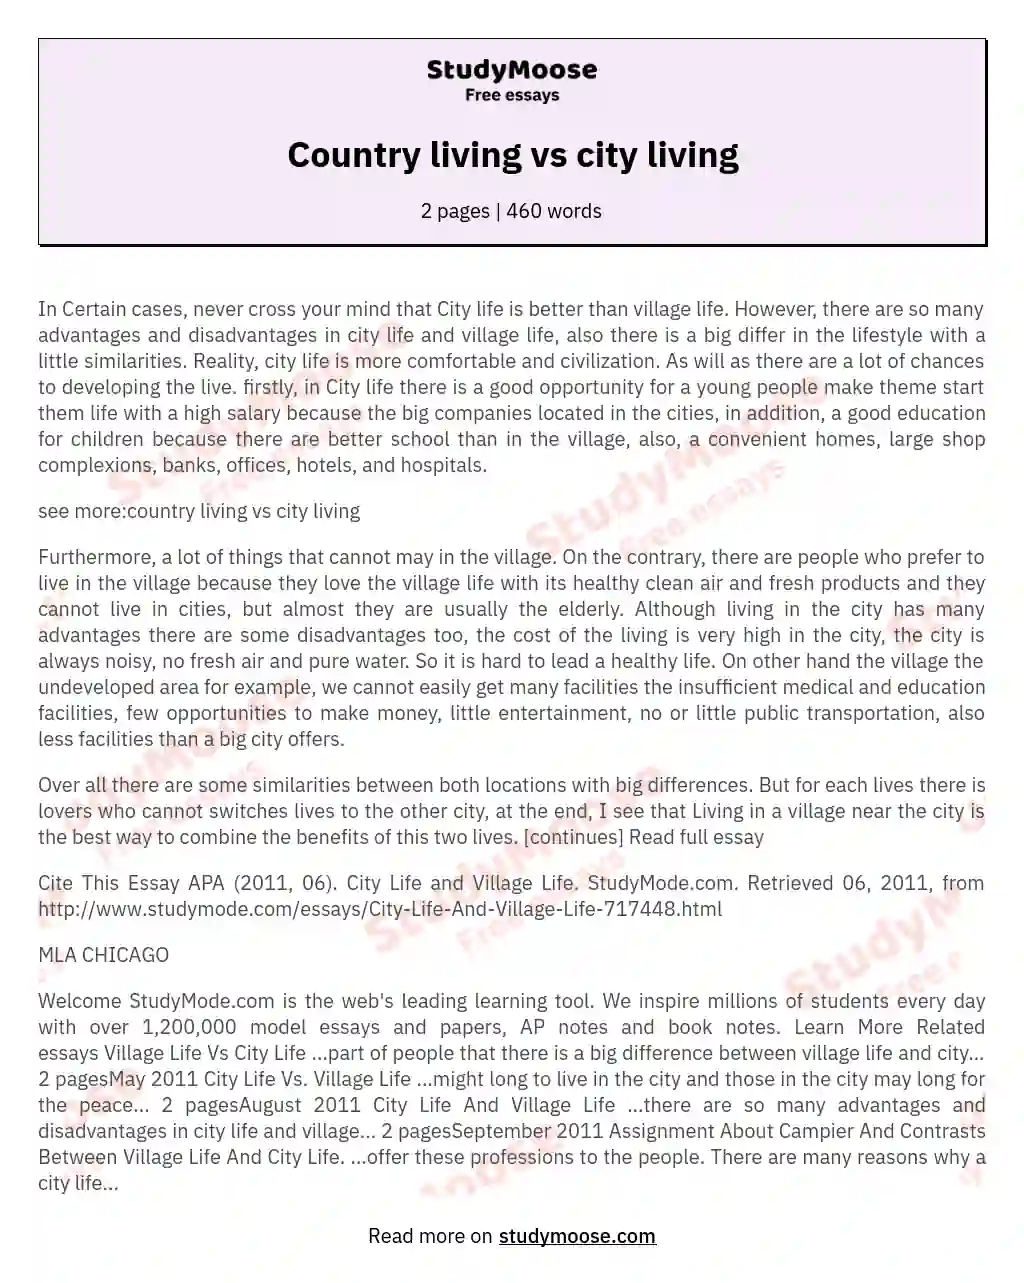 Country living vs city living essay